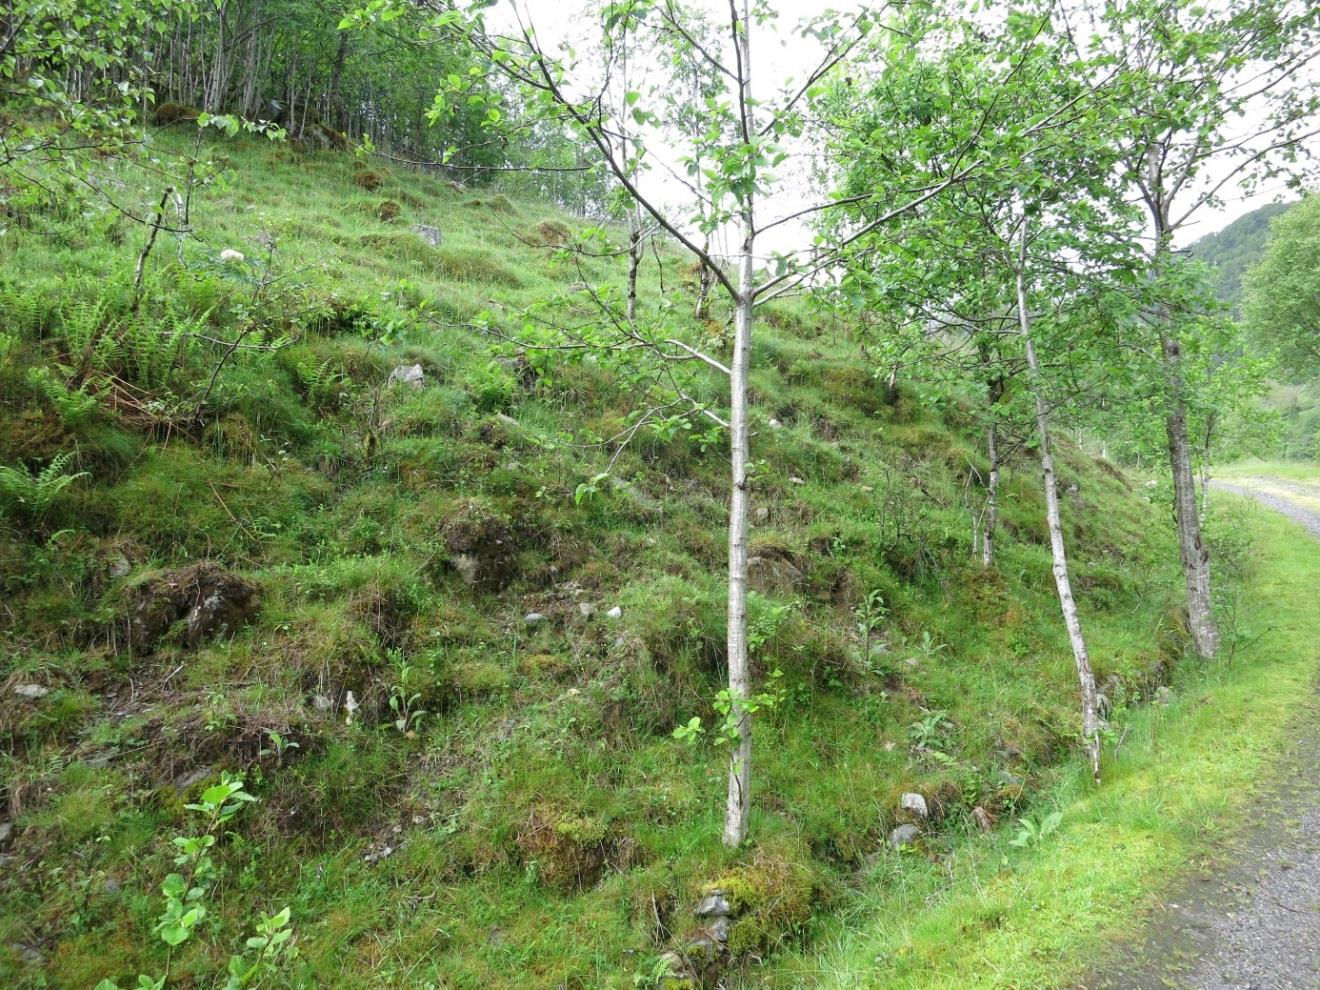 etasjemose og vegetasjonstypen settes til småbregneskog A5 med innslag av lavurtskog B1. Typisk er bringebær og andre noe næringskrevende arter i veikant.